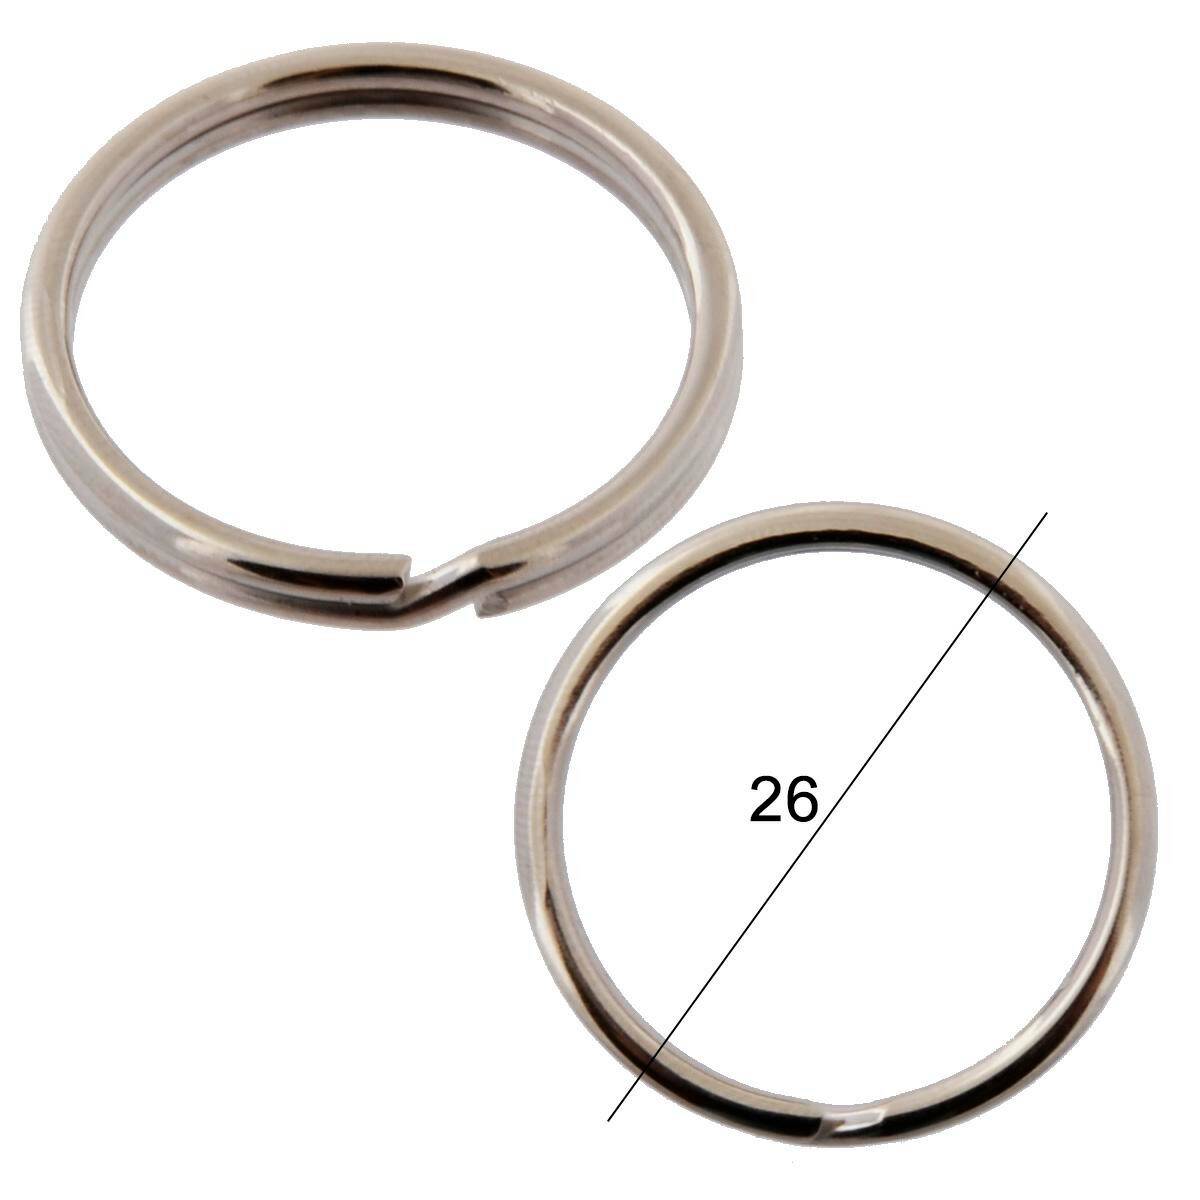 Key rings diameter 26mm